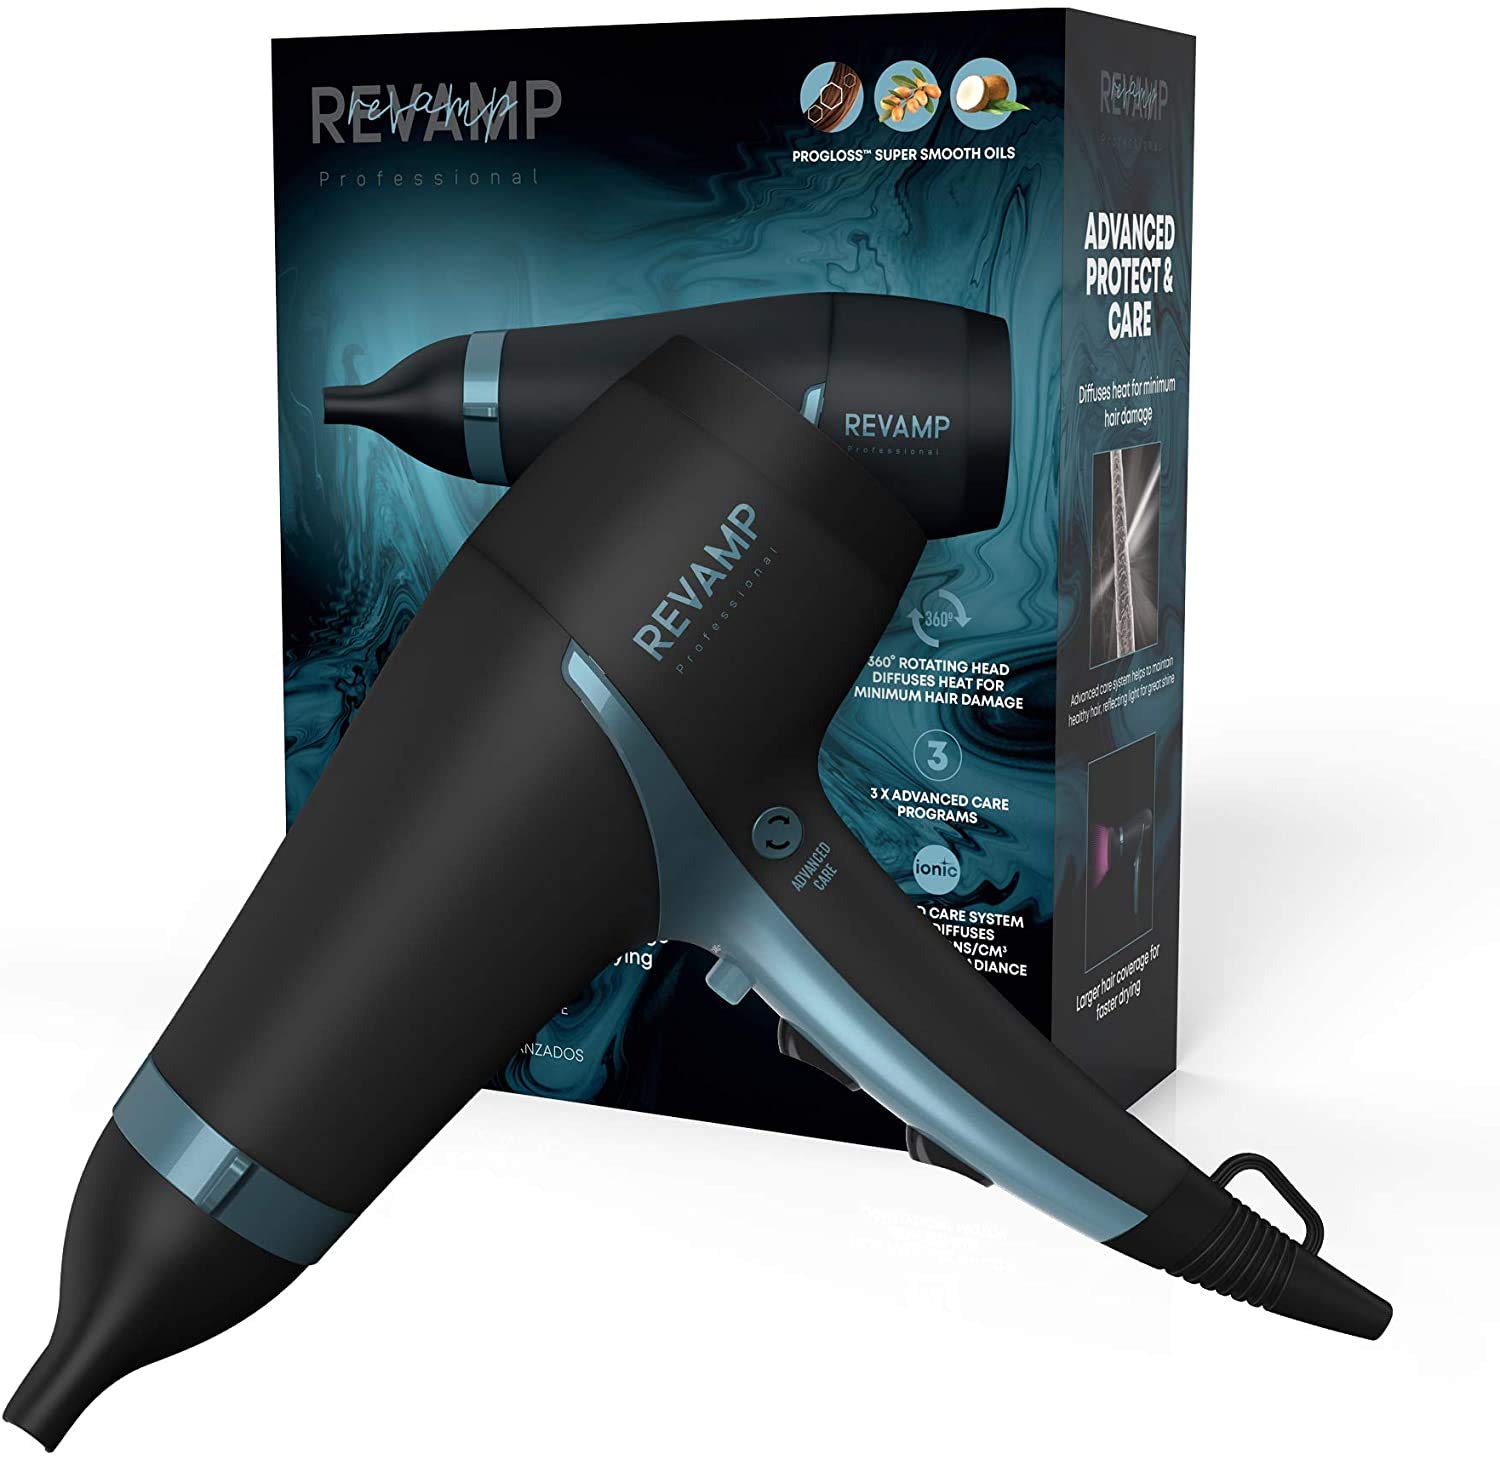 REVAMP Progloss 4000 Advanced Protect & Care Haartrockner - leichter, tragbarer Profi-Föhn mit Glättungsdüse und fortschrittlichen Pflegeprogrammen, Ionen-Technologie für glattes & frizz-freies Haar